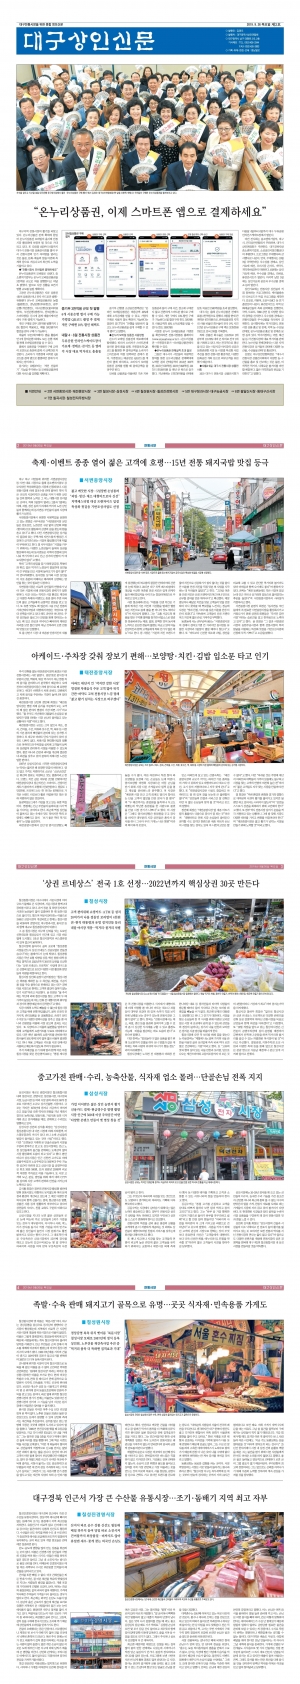 대구상인신문 2019 - 제2호(2019.09.26) 